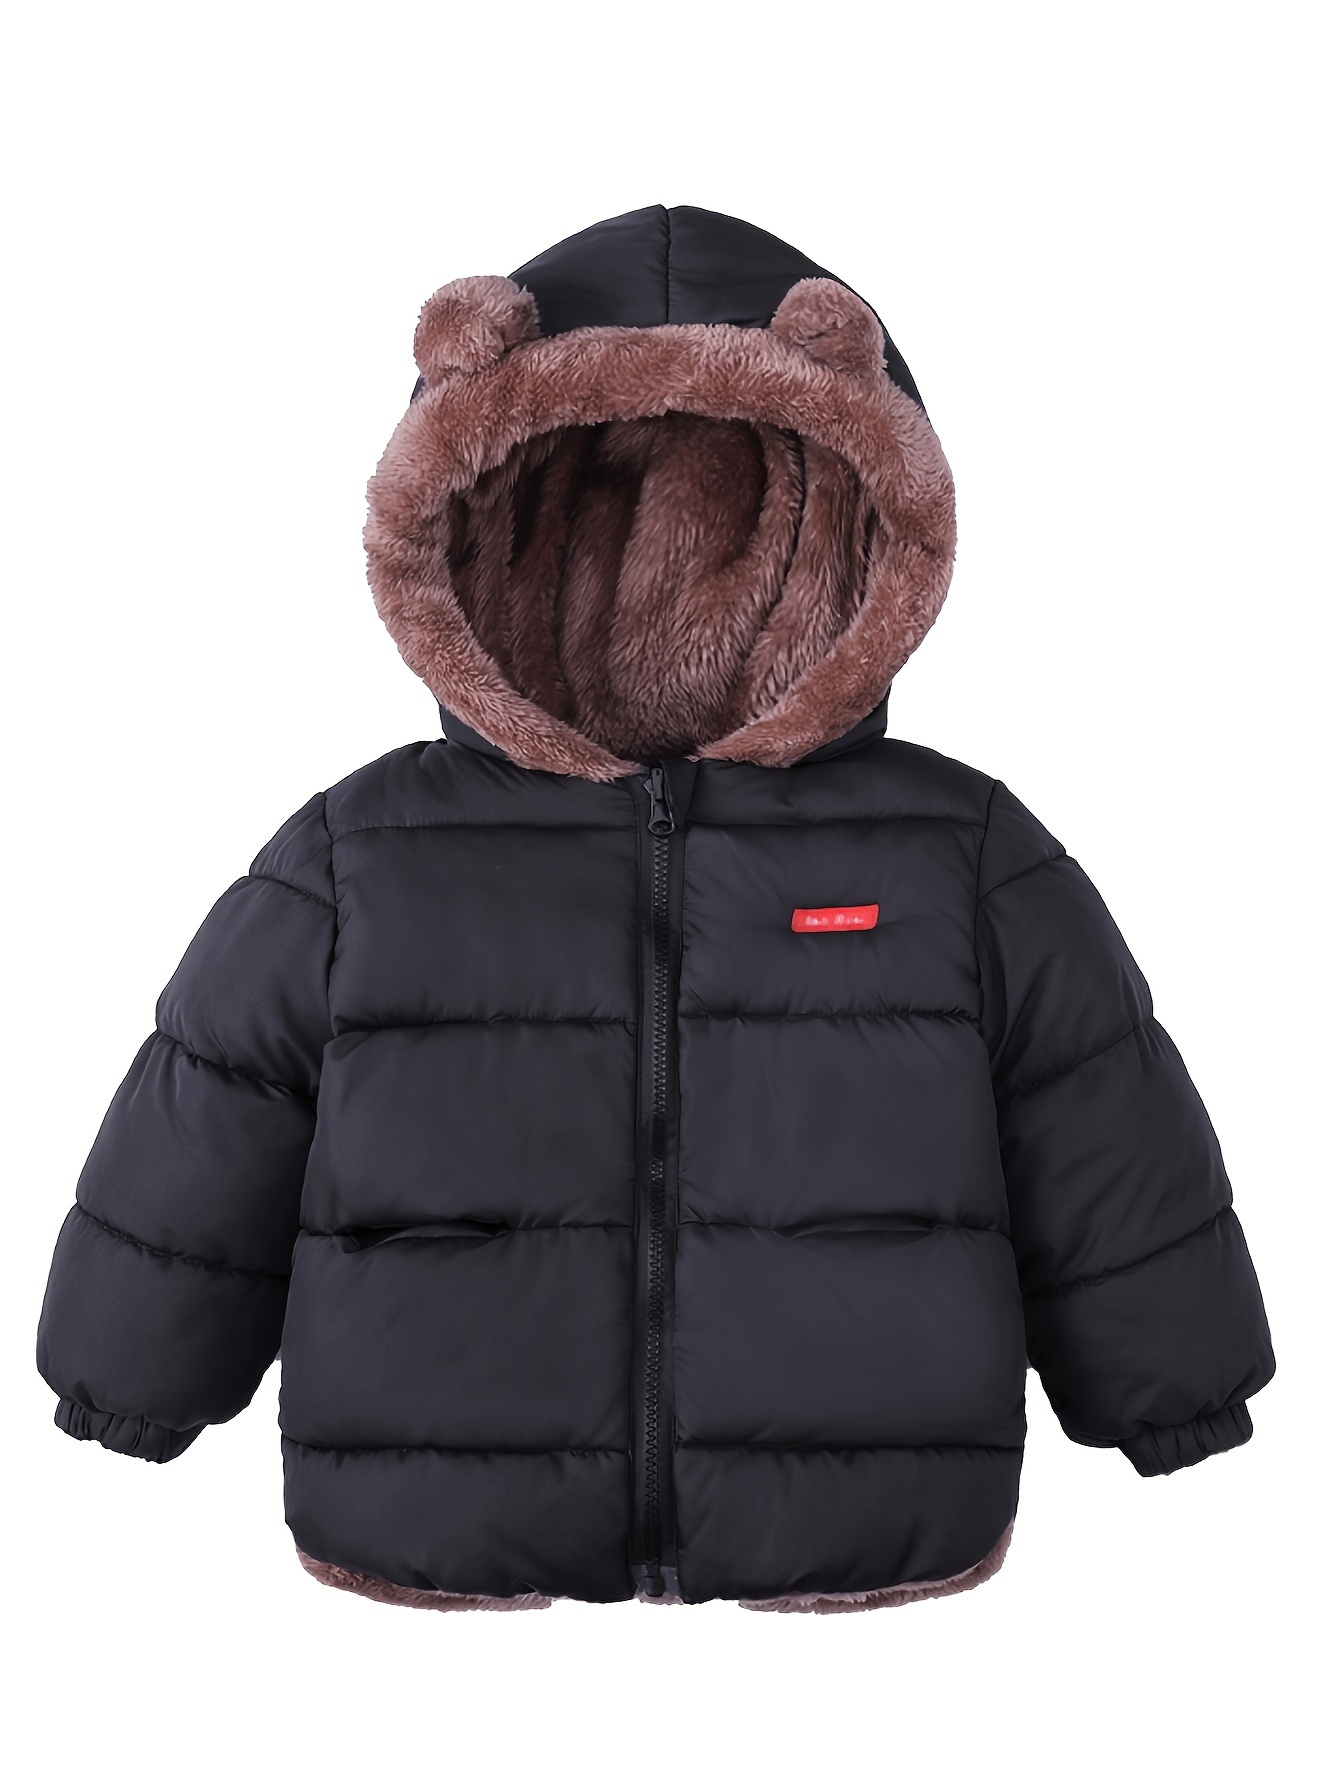 Abrigo de invierno impermeable para mujer, largo grueso, acolchado,  chaqueta de nieve con cinturón delgado, capucha de piel sintética